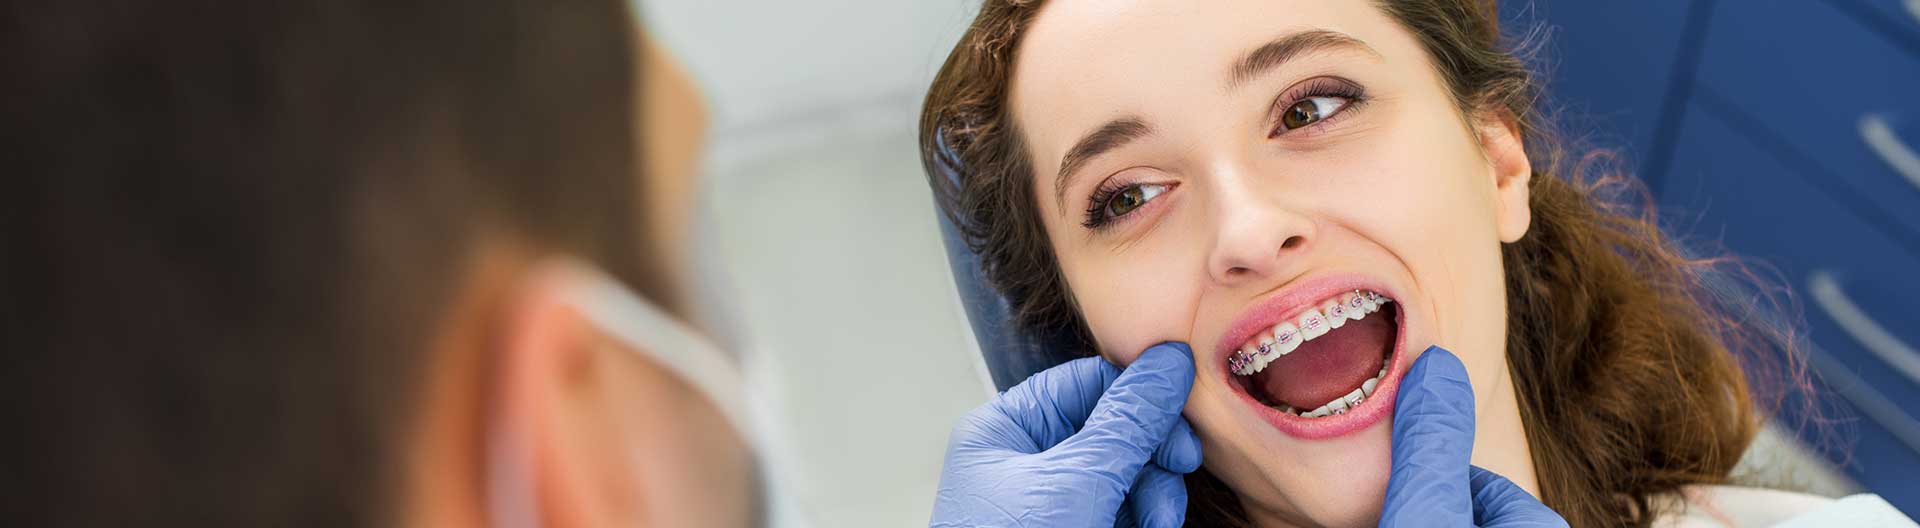 A dentist is adjusting a patient's braces